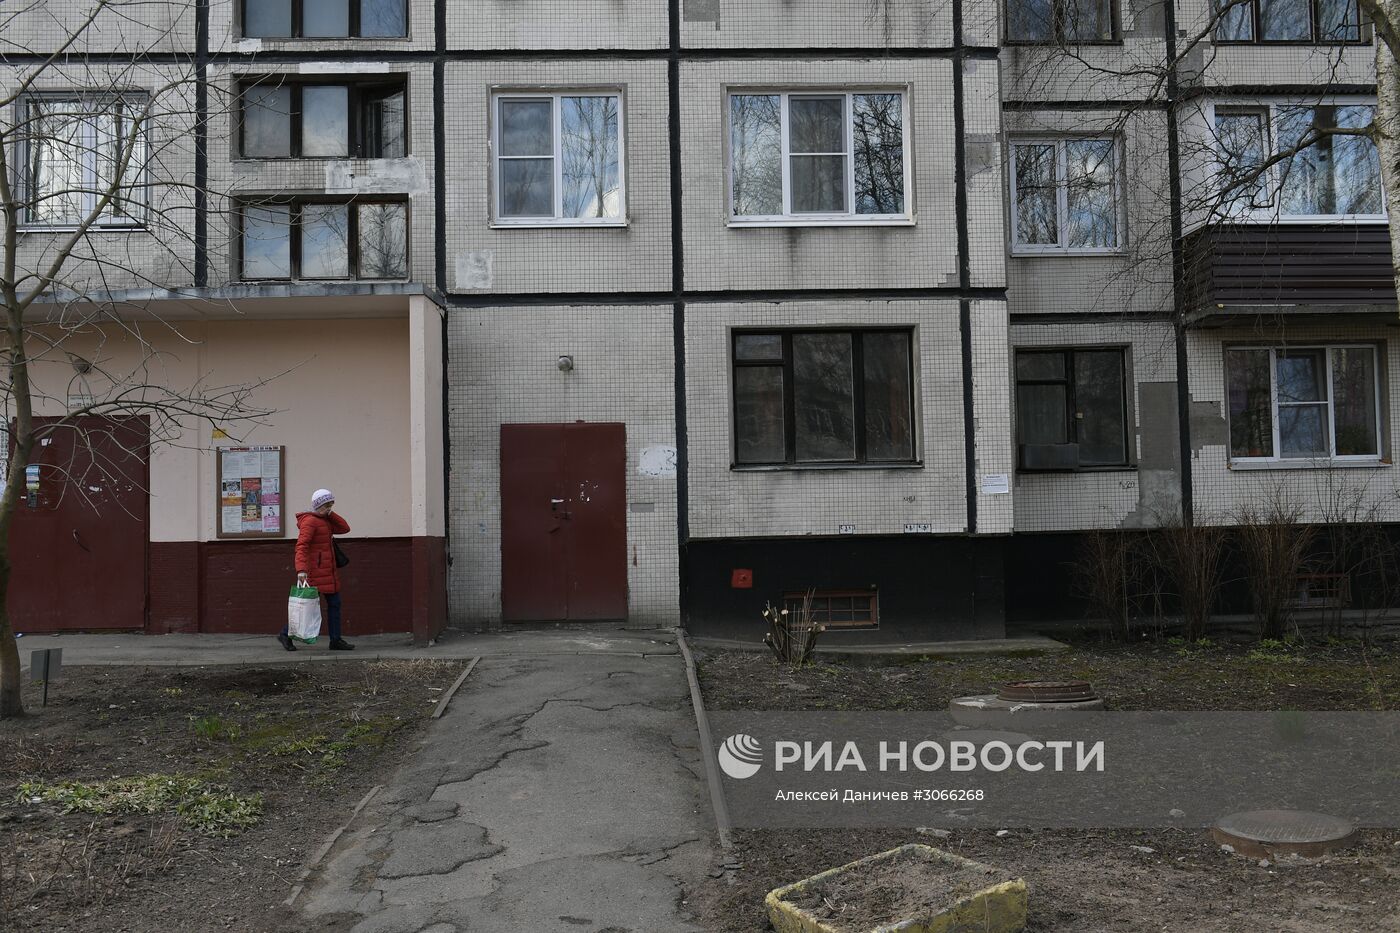 Дом, в котором жил вероятный исполнитель теракта Акбаржон Джалилов